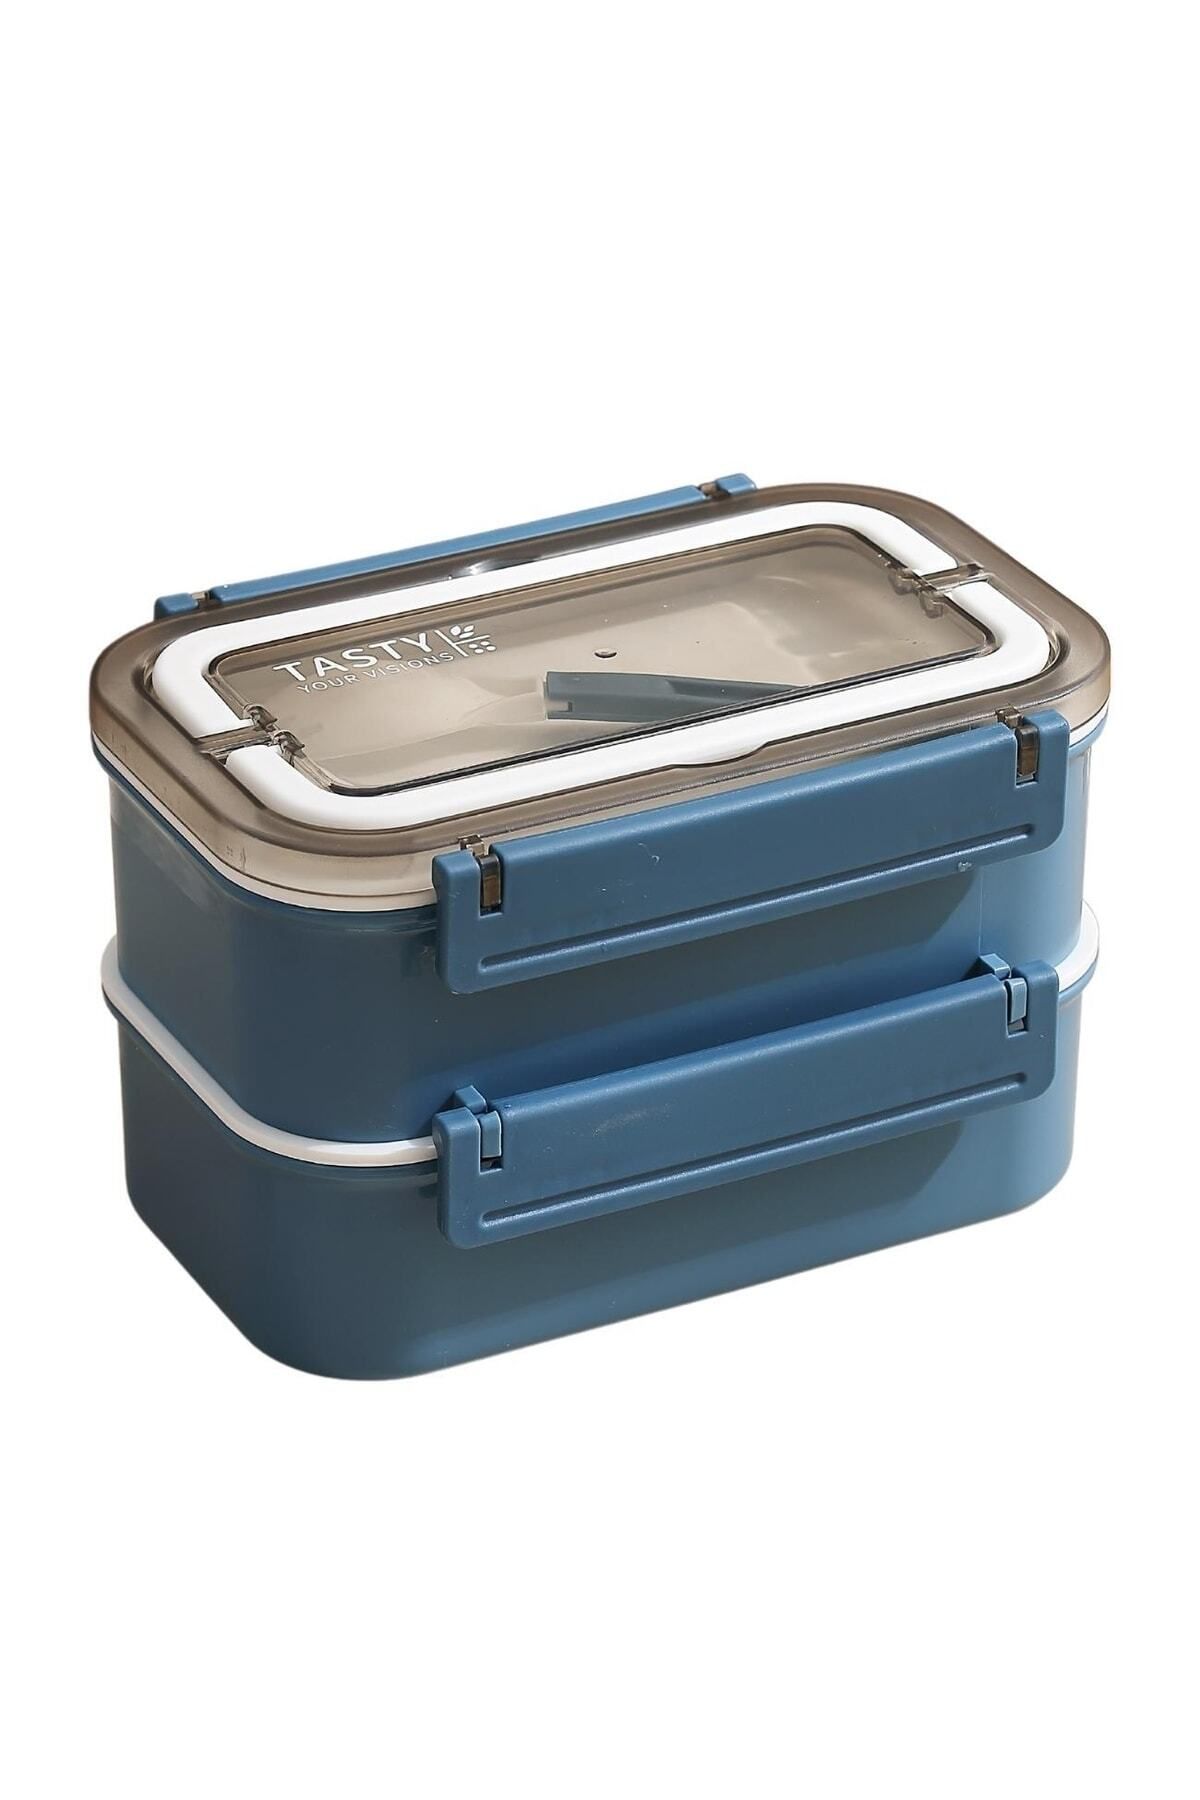 Vagonlife Bento 1600ml Lunchbox Yeni Koleksiyon 2 Katlı 4 Bölmeli Çelik Sefer Tası Yemek Kutusu